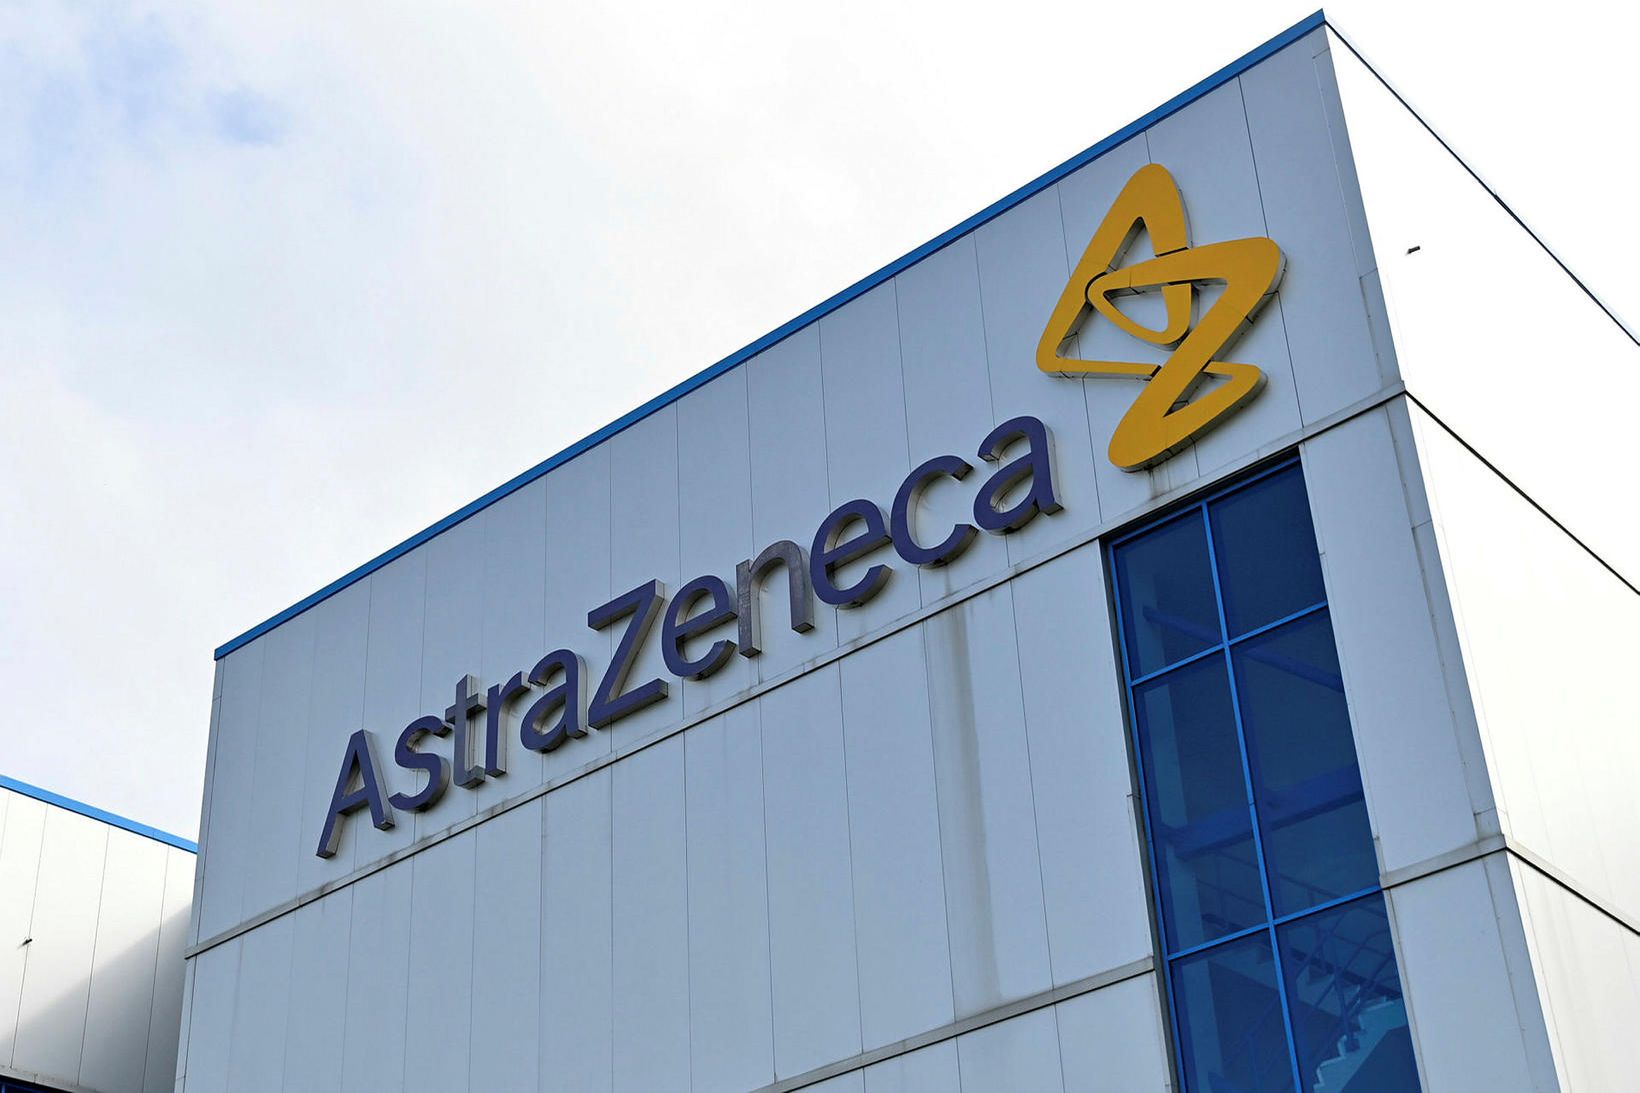 AstraZeneca hefur þróað bóluefni við kórónuveirunni í samstarfi við Oxford-háskóla.